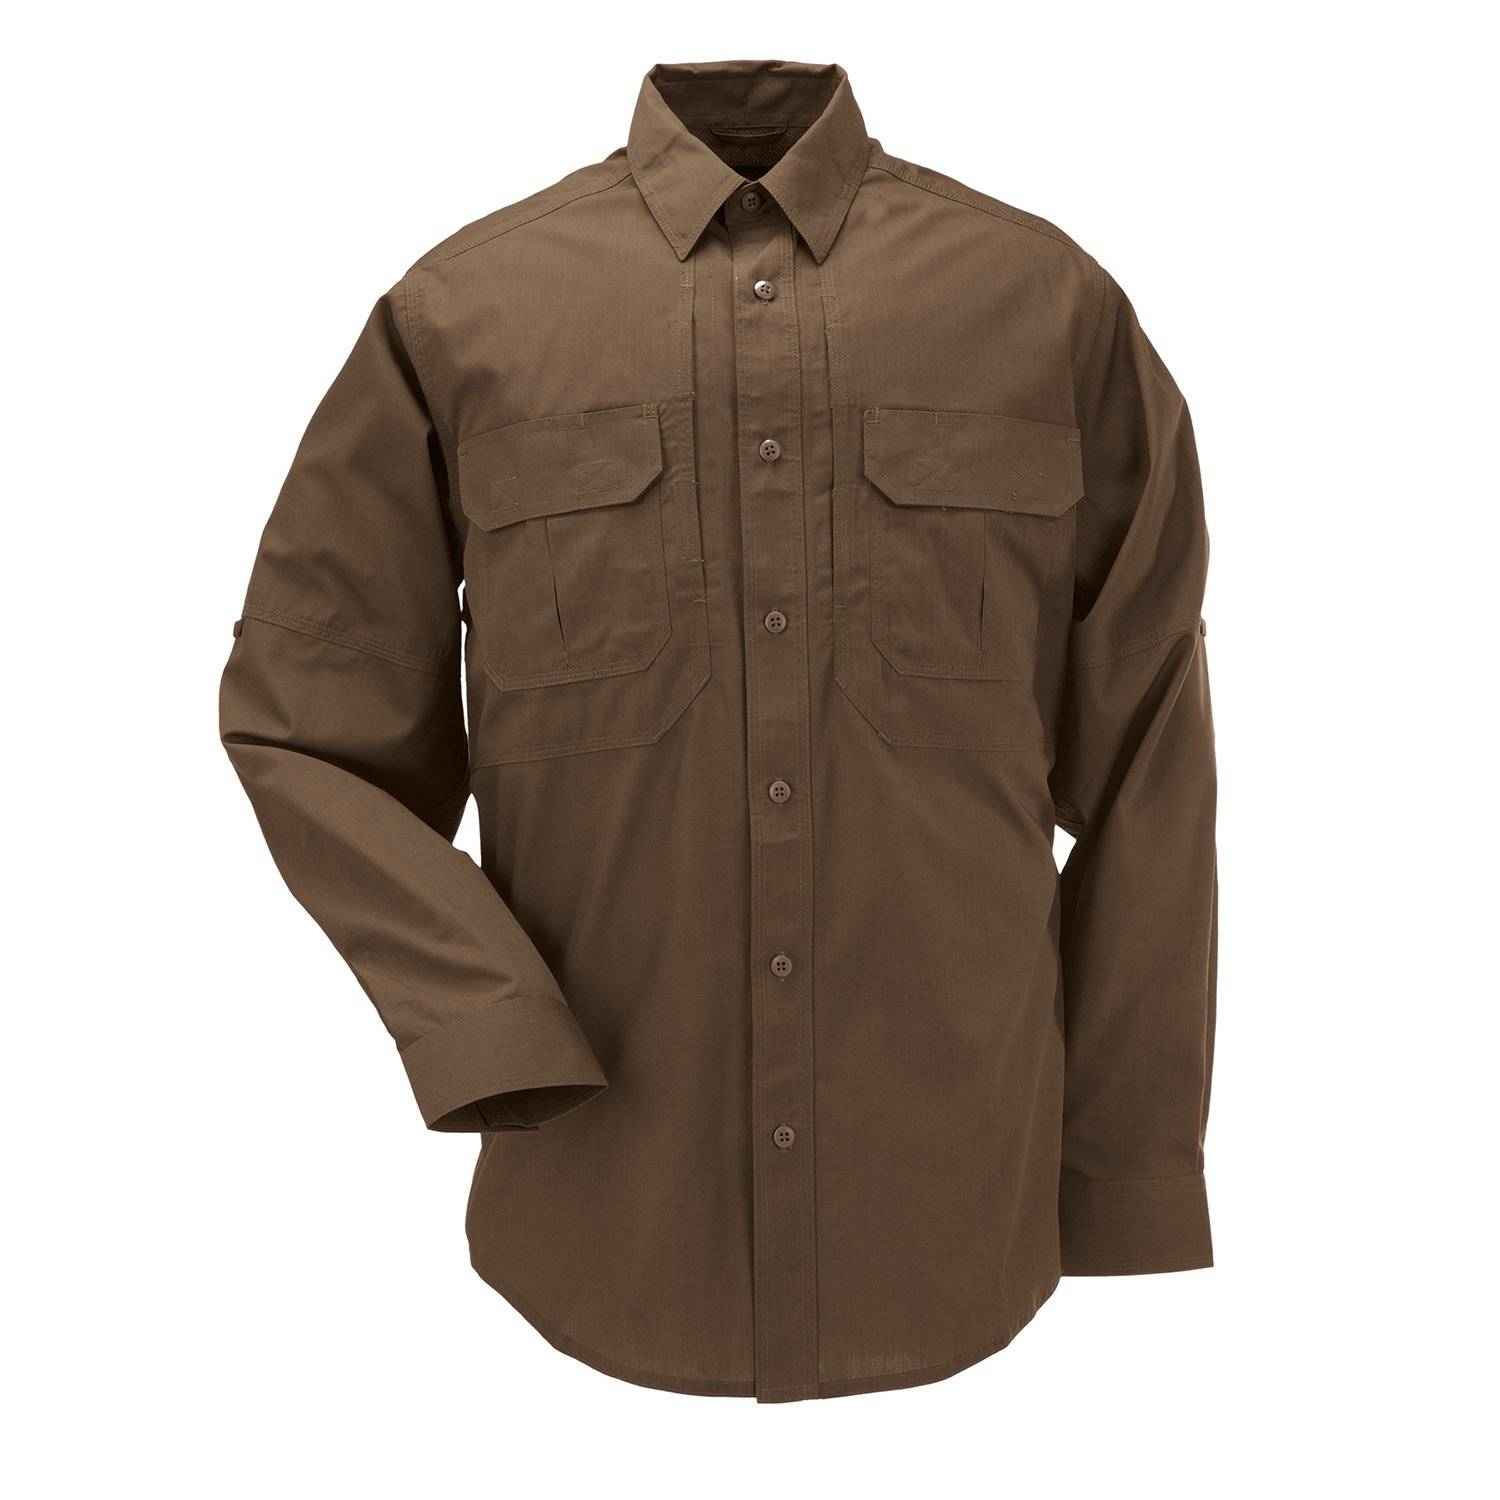 5.11 Tactical Series Realtree Xtra Taclite Long Sleeve Shirt Size XL NWT 267 